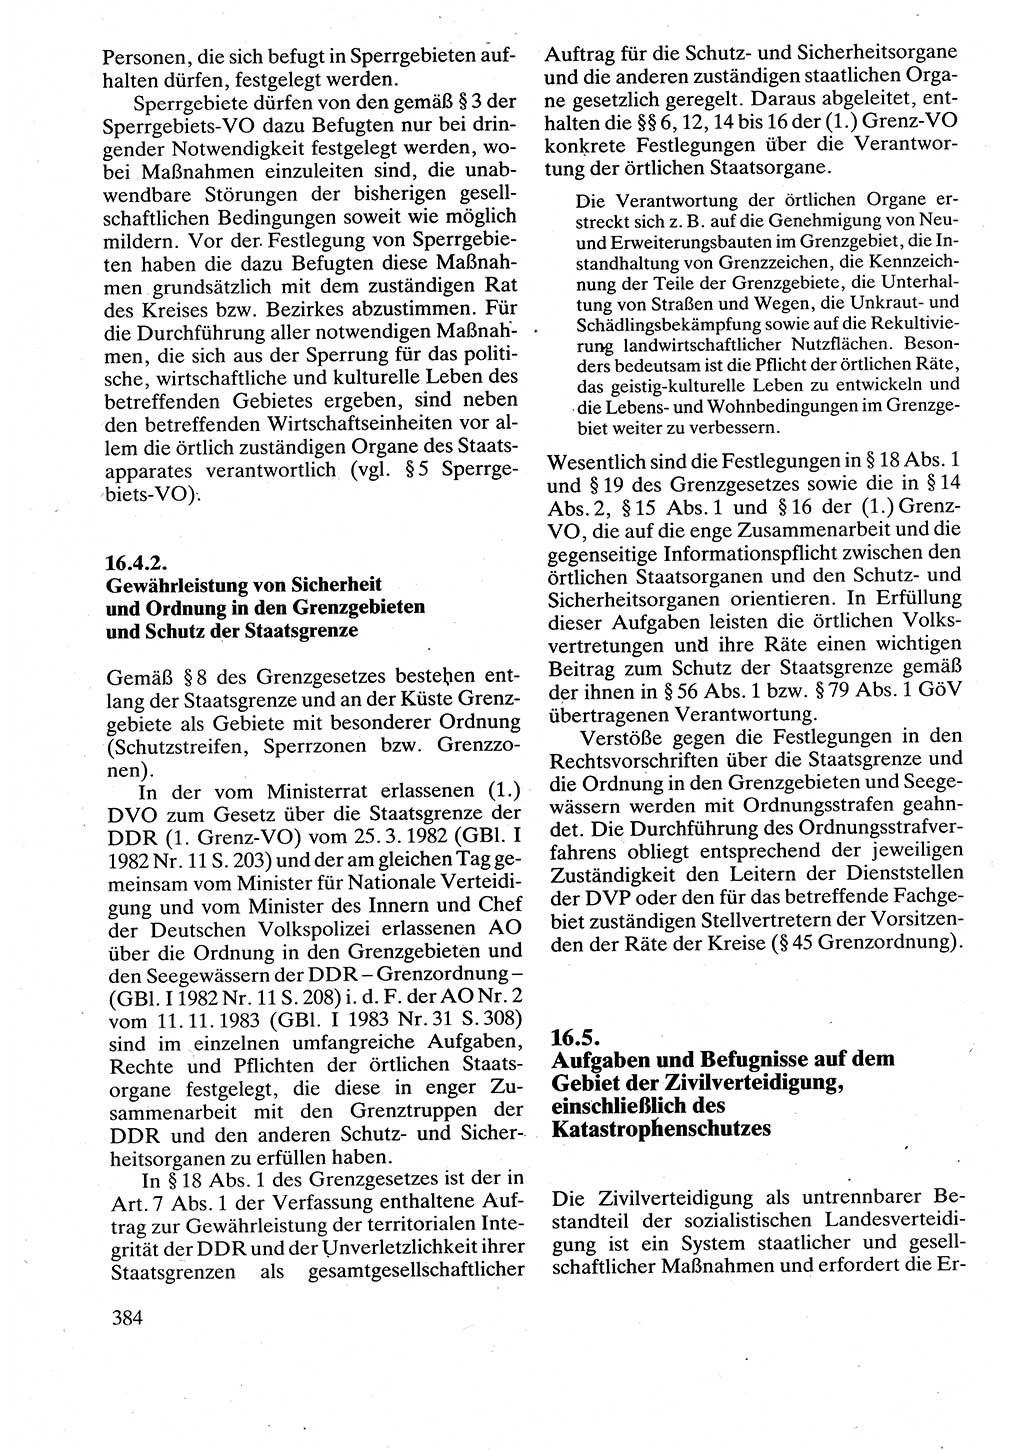 Verwaltungsrecht [Deutsche Demokratische Republik (DDR)], Lehrbuch 1988, Seite 384 (Verw.-R. DDR Lb. 1988, S. 384)